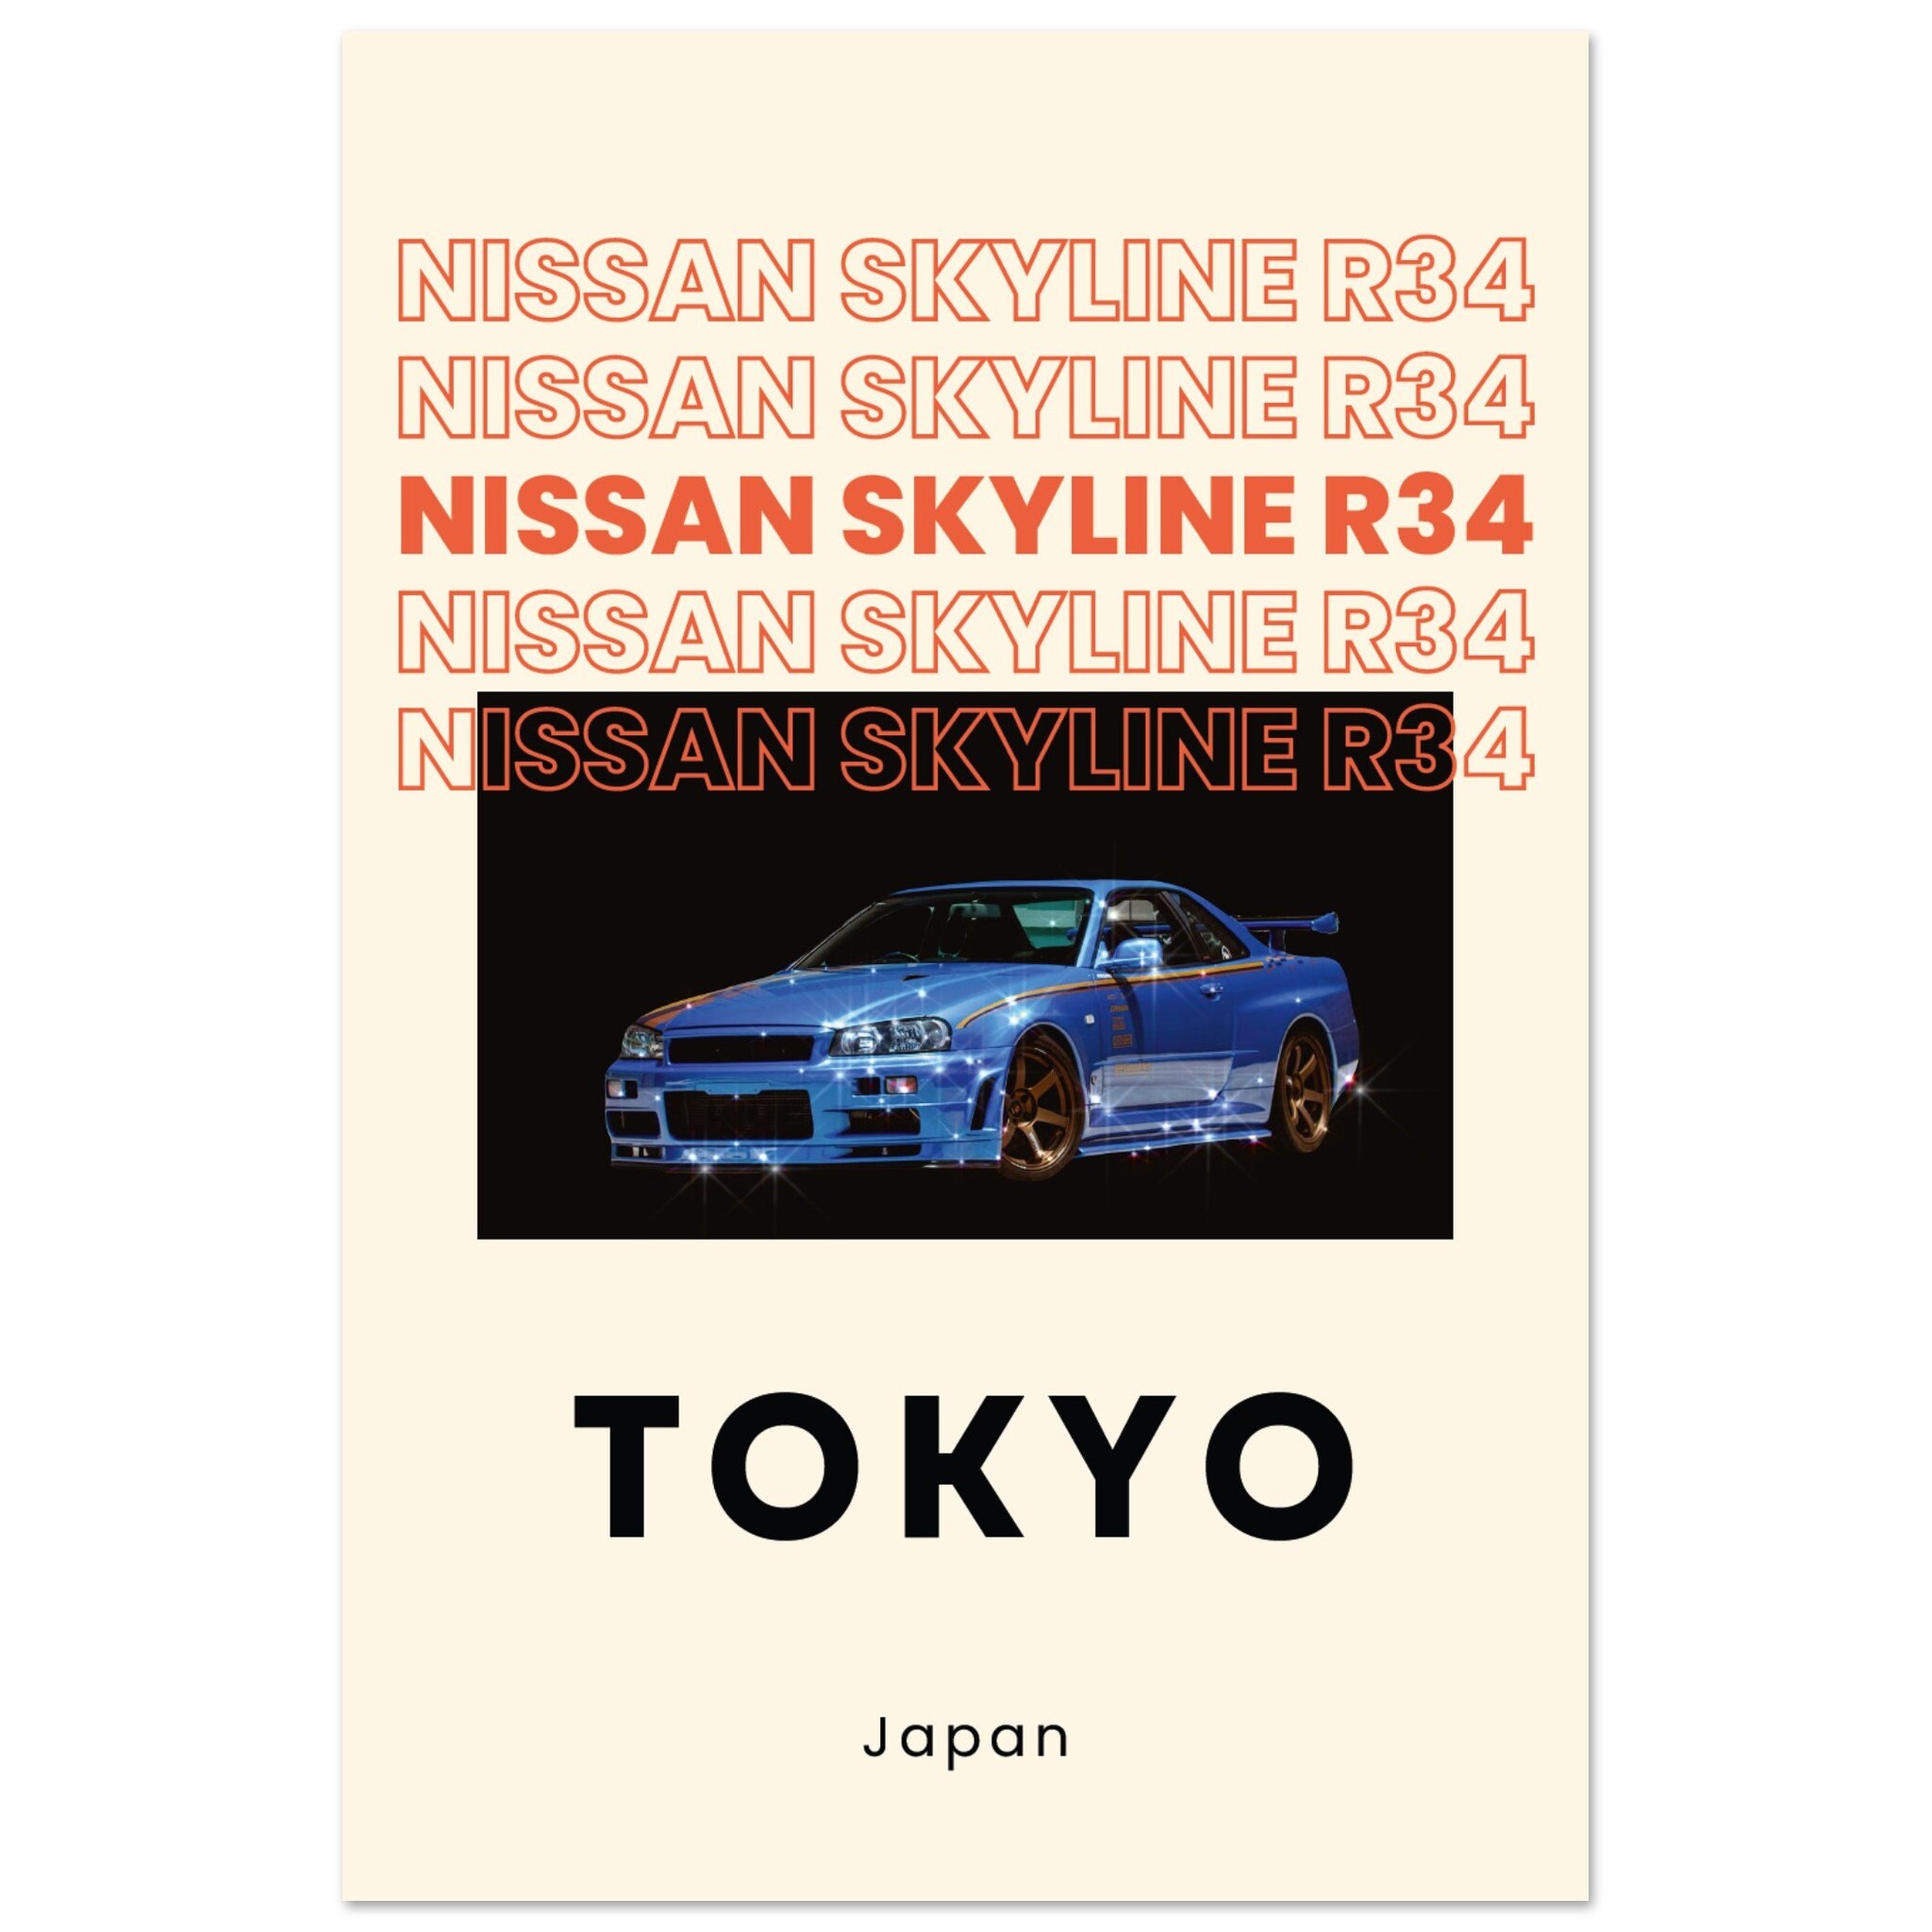  TST INNOPRINT CO Póster de coche tuning de Nissan Skyline GTR  R34 24x36 : Todo lo demás